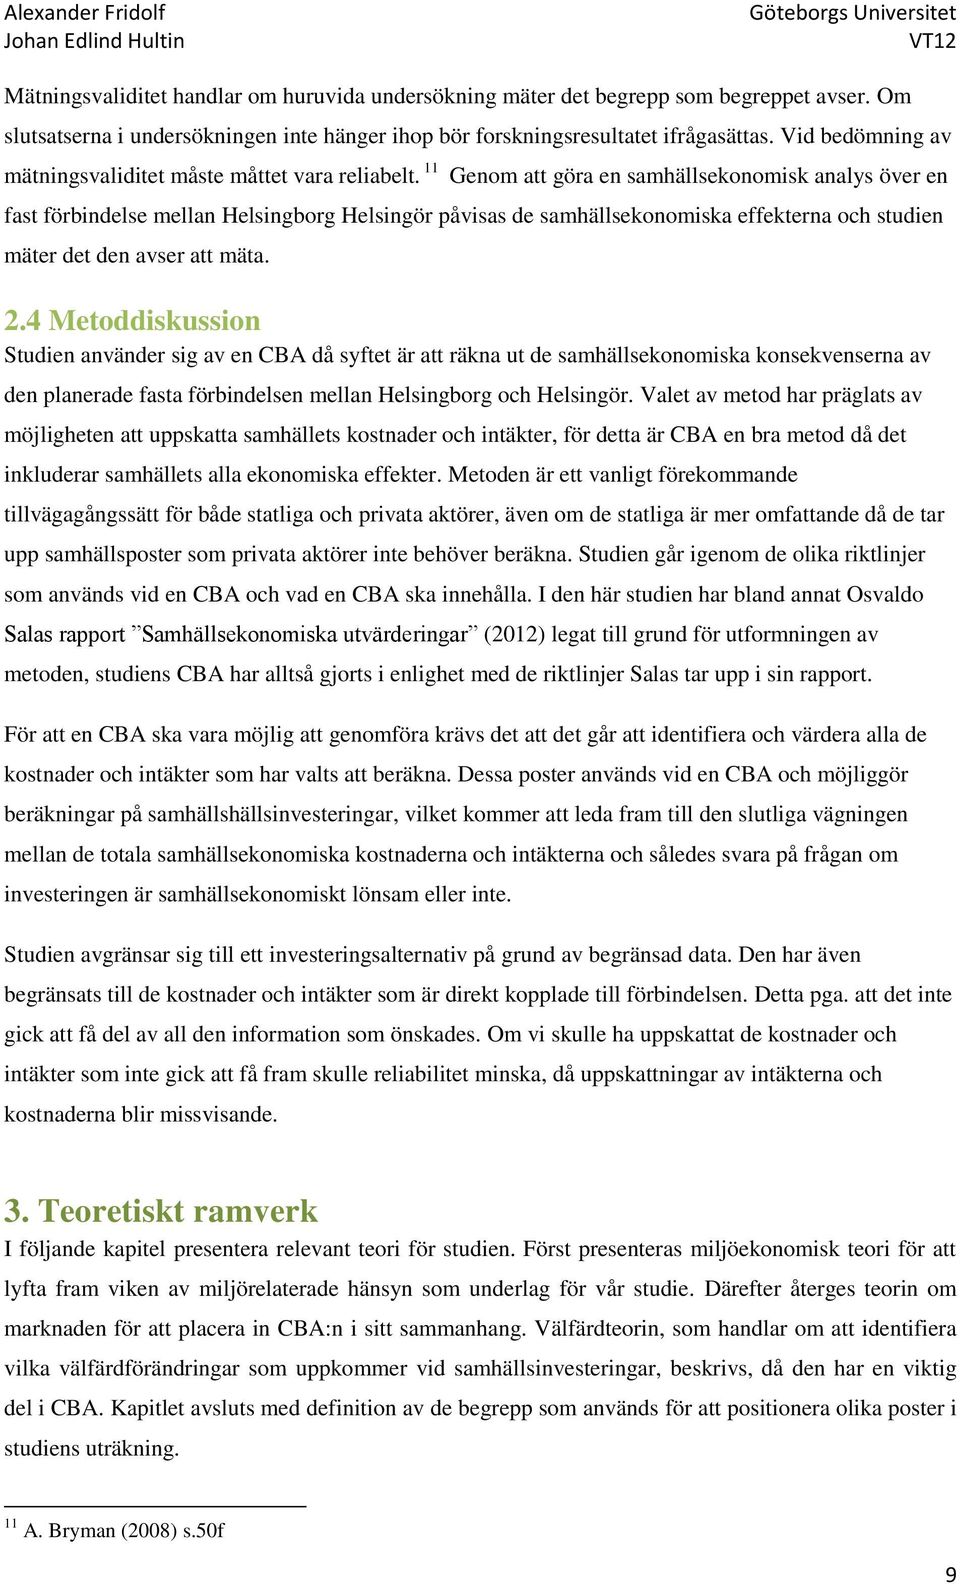 11 Genom att göra en samhällsekonomisk analys över en fast förbindelse mellan Helsingborg Helsingör påvisas de samhällsekonomiska effekterna och studien mäter det den avser att mäta. 2.